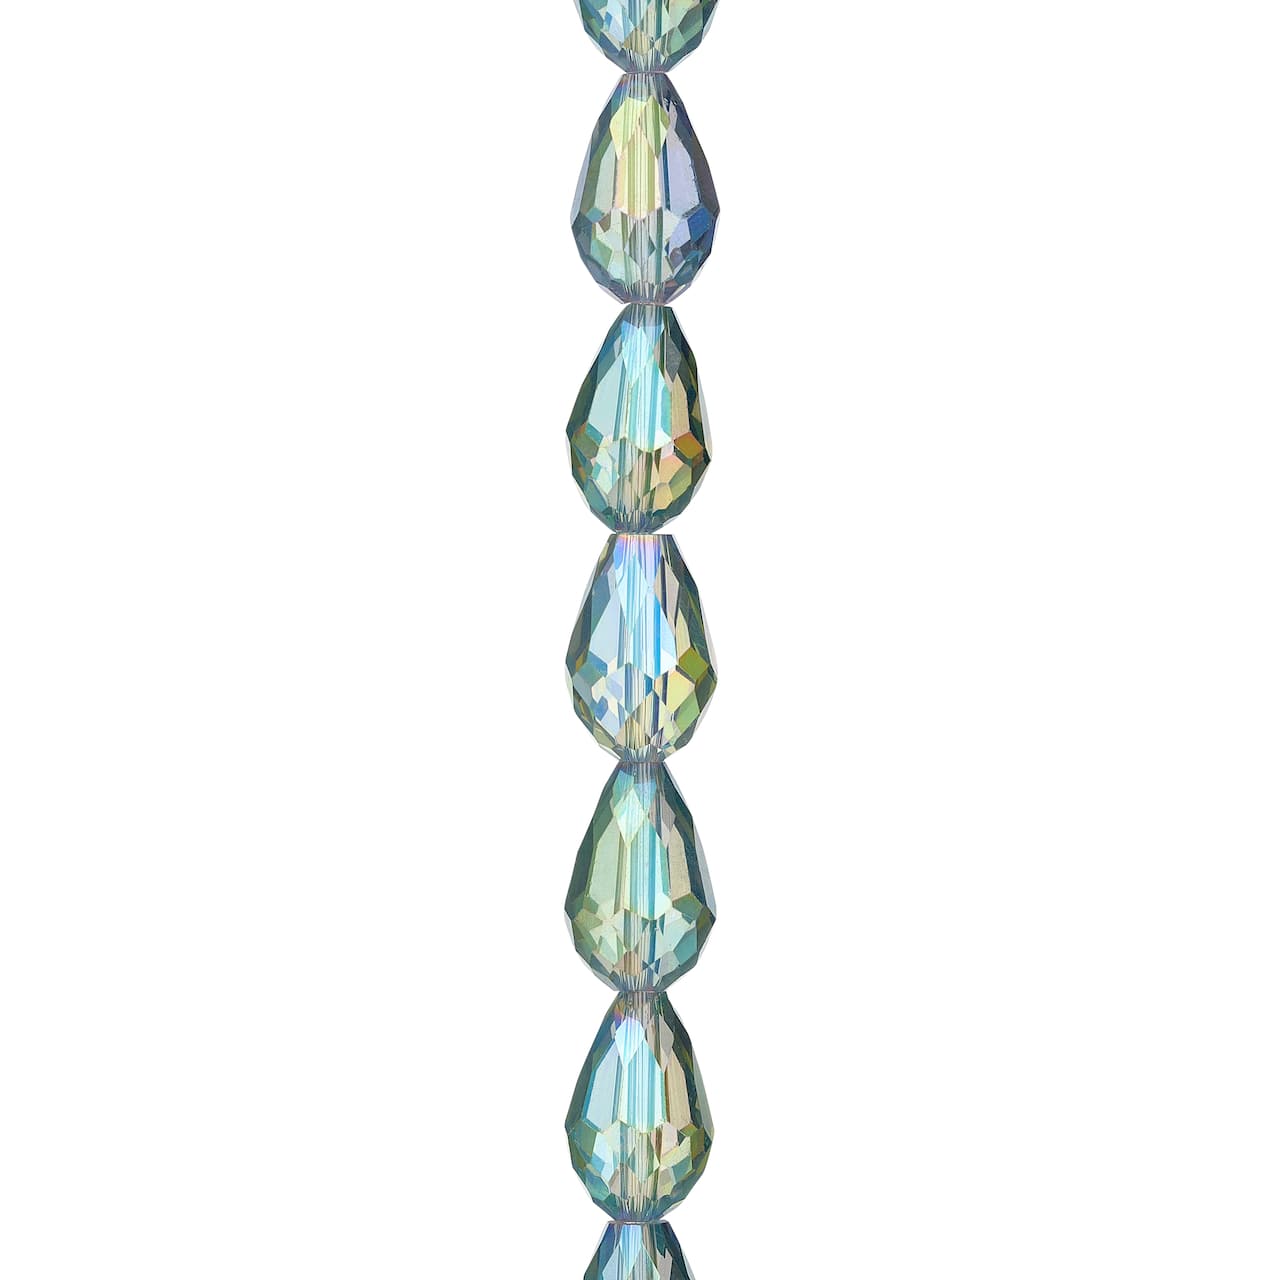 Iridescent Green Glass Teardrop Beads, 14mm by Bead Landing&#x2122;